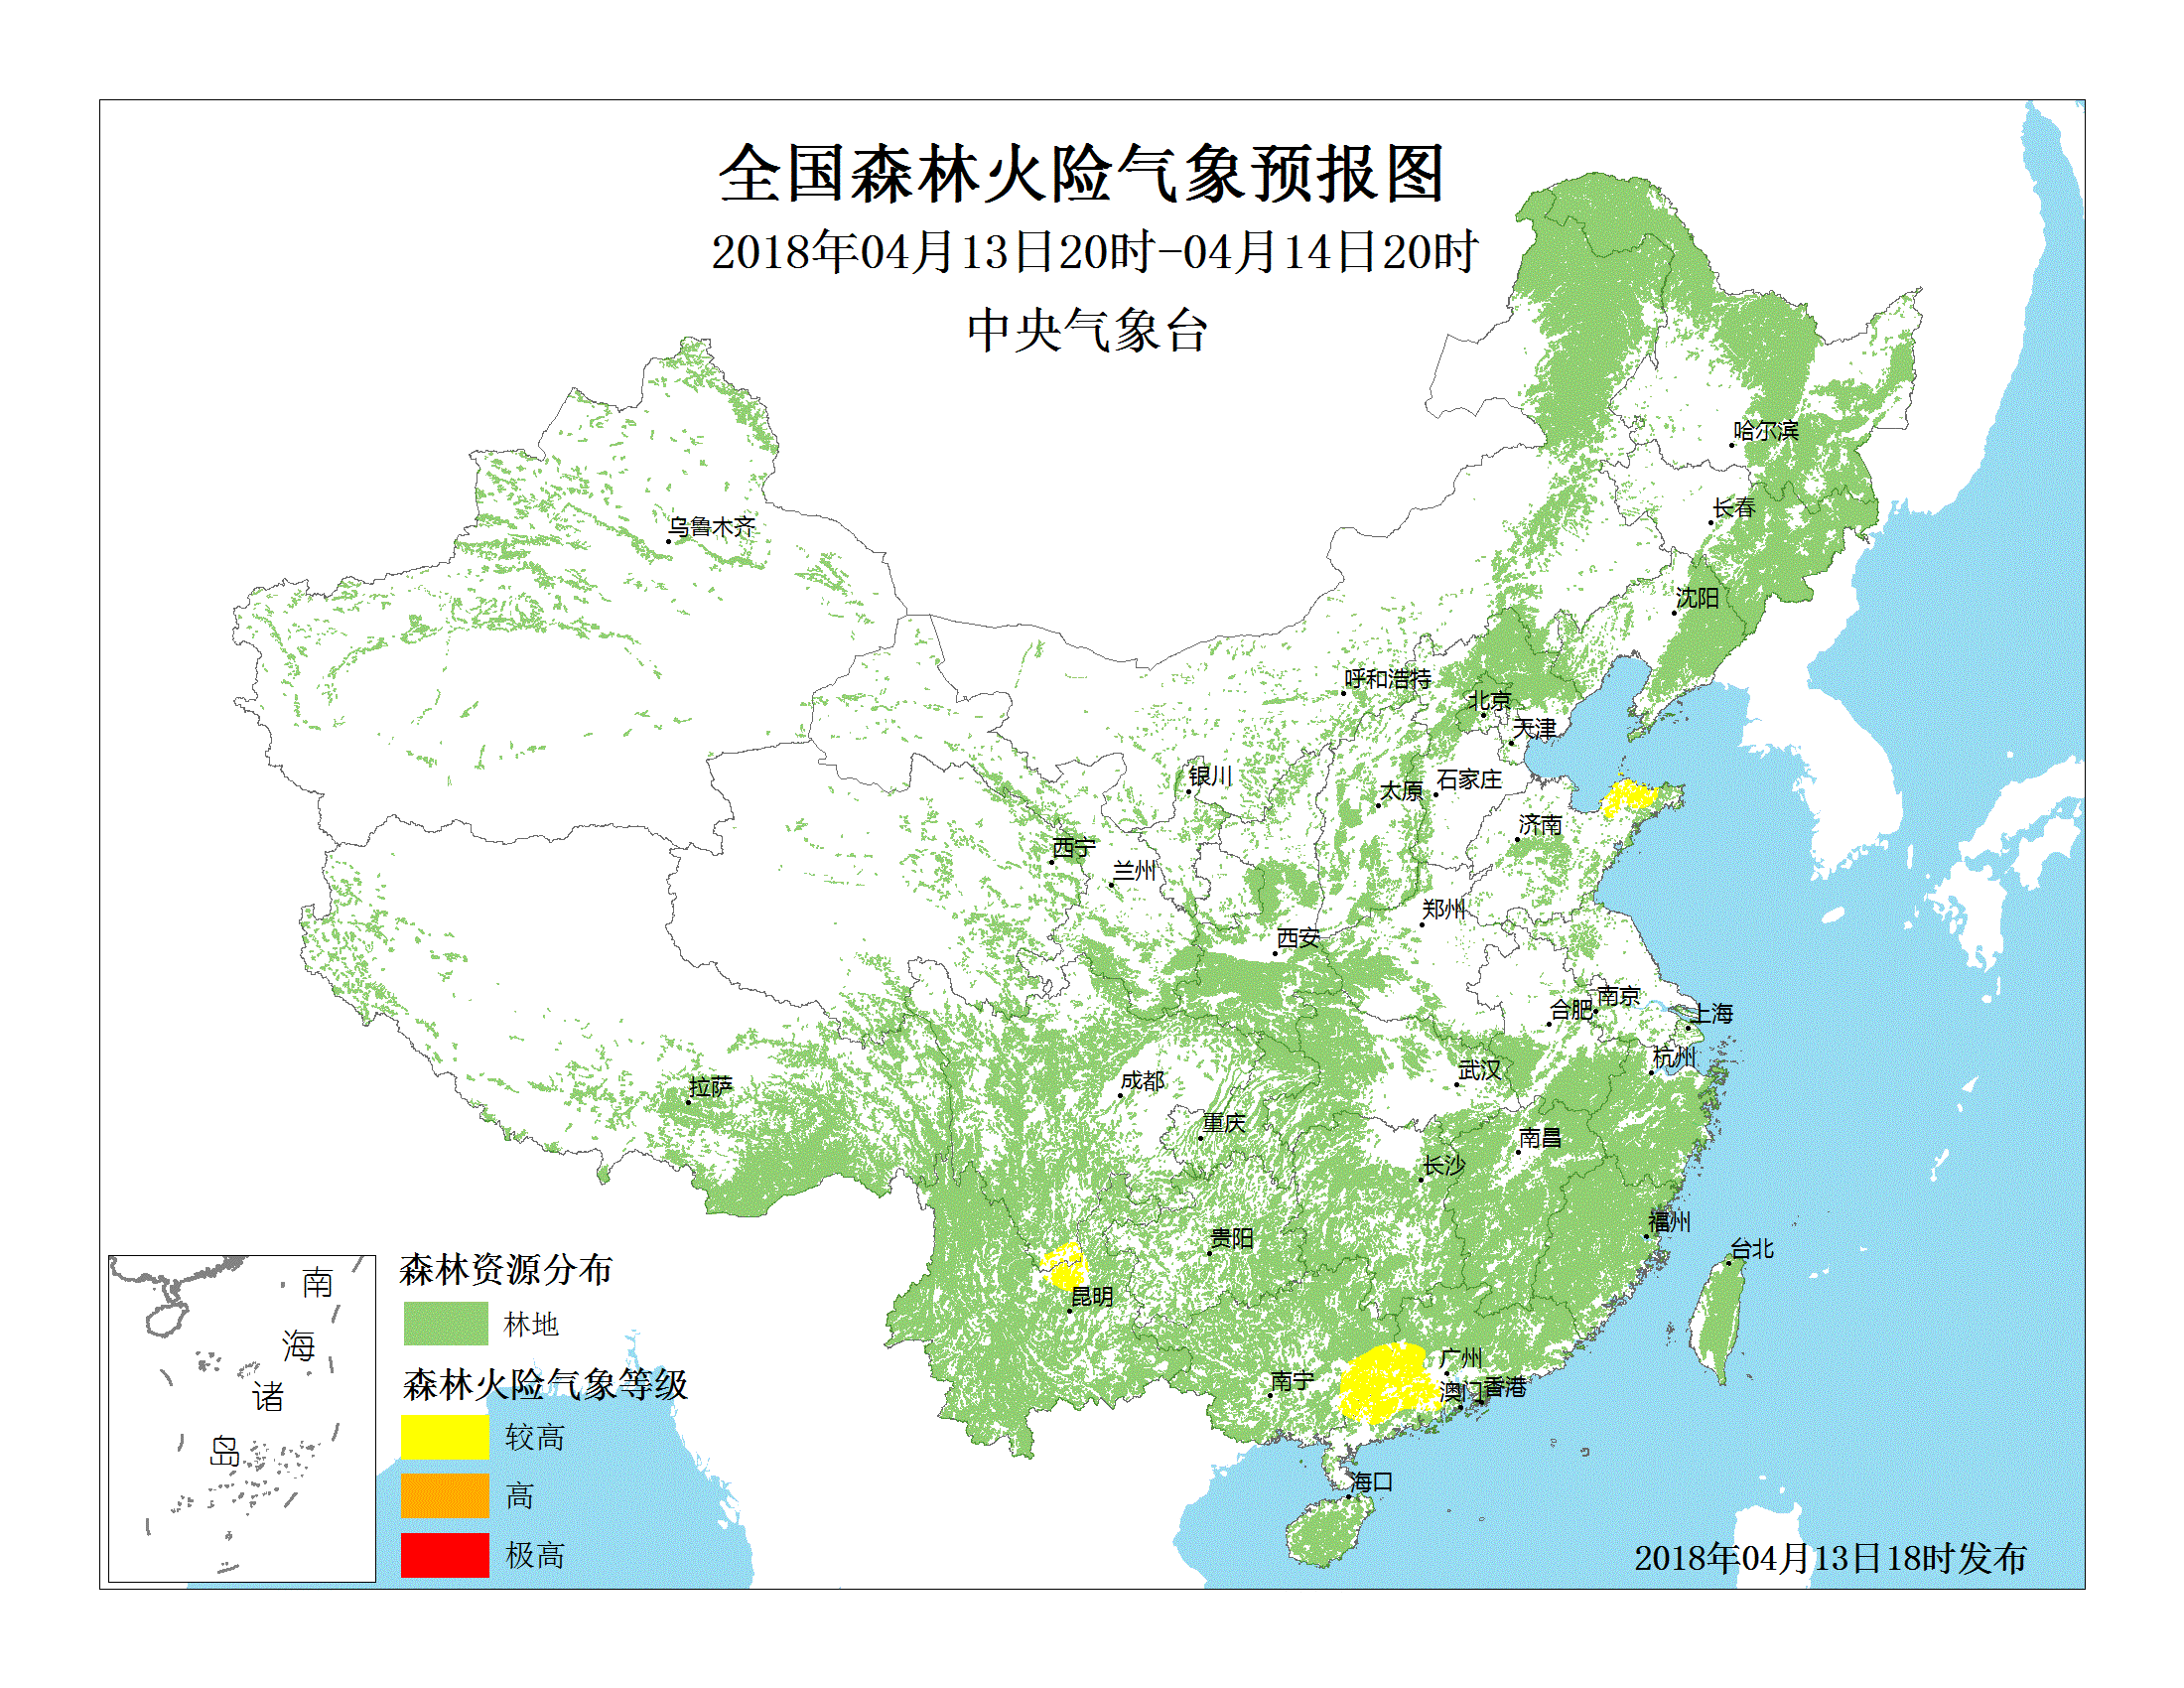 广西东部,广东西部,四川南部,云南北部等地的部分地区森林火险气象图片